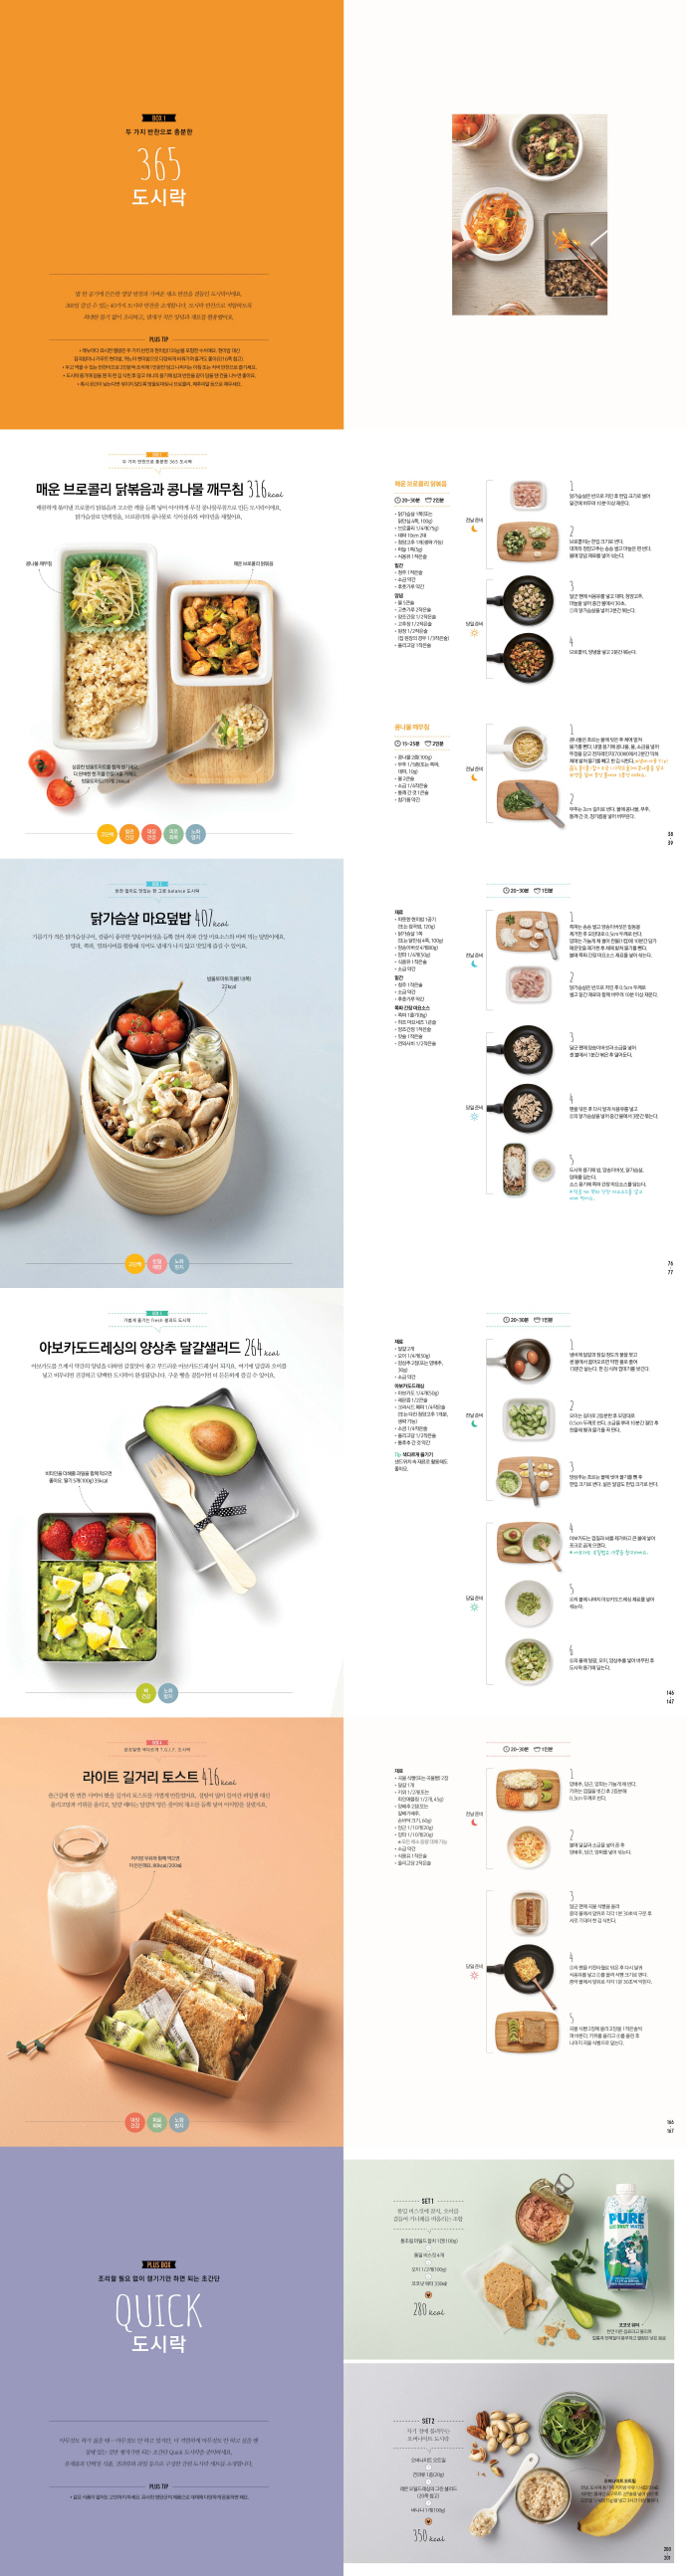 더 가벼운 도시락(더 라이트 건강 요리책 시리즈) 도서 상세이미지